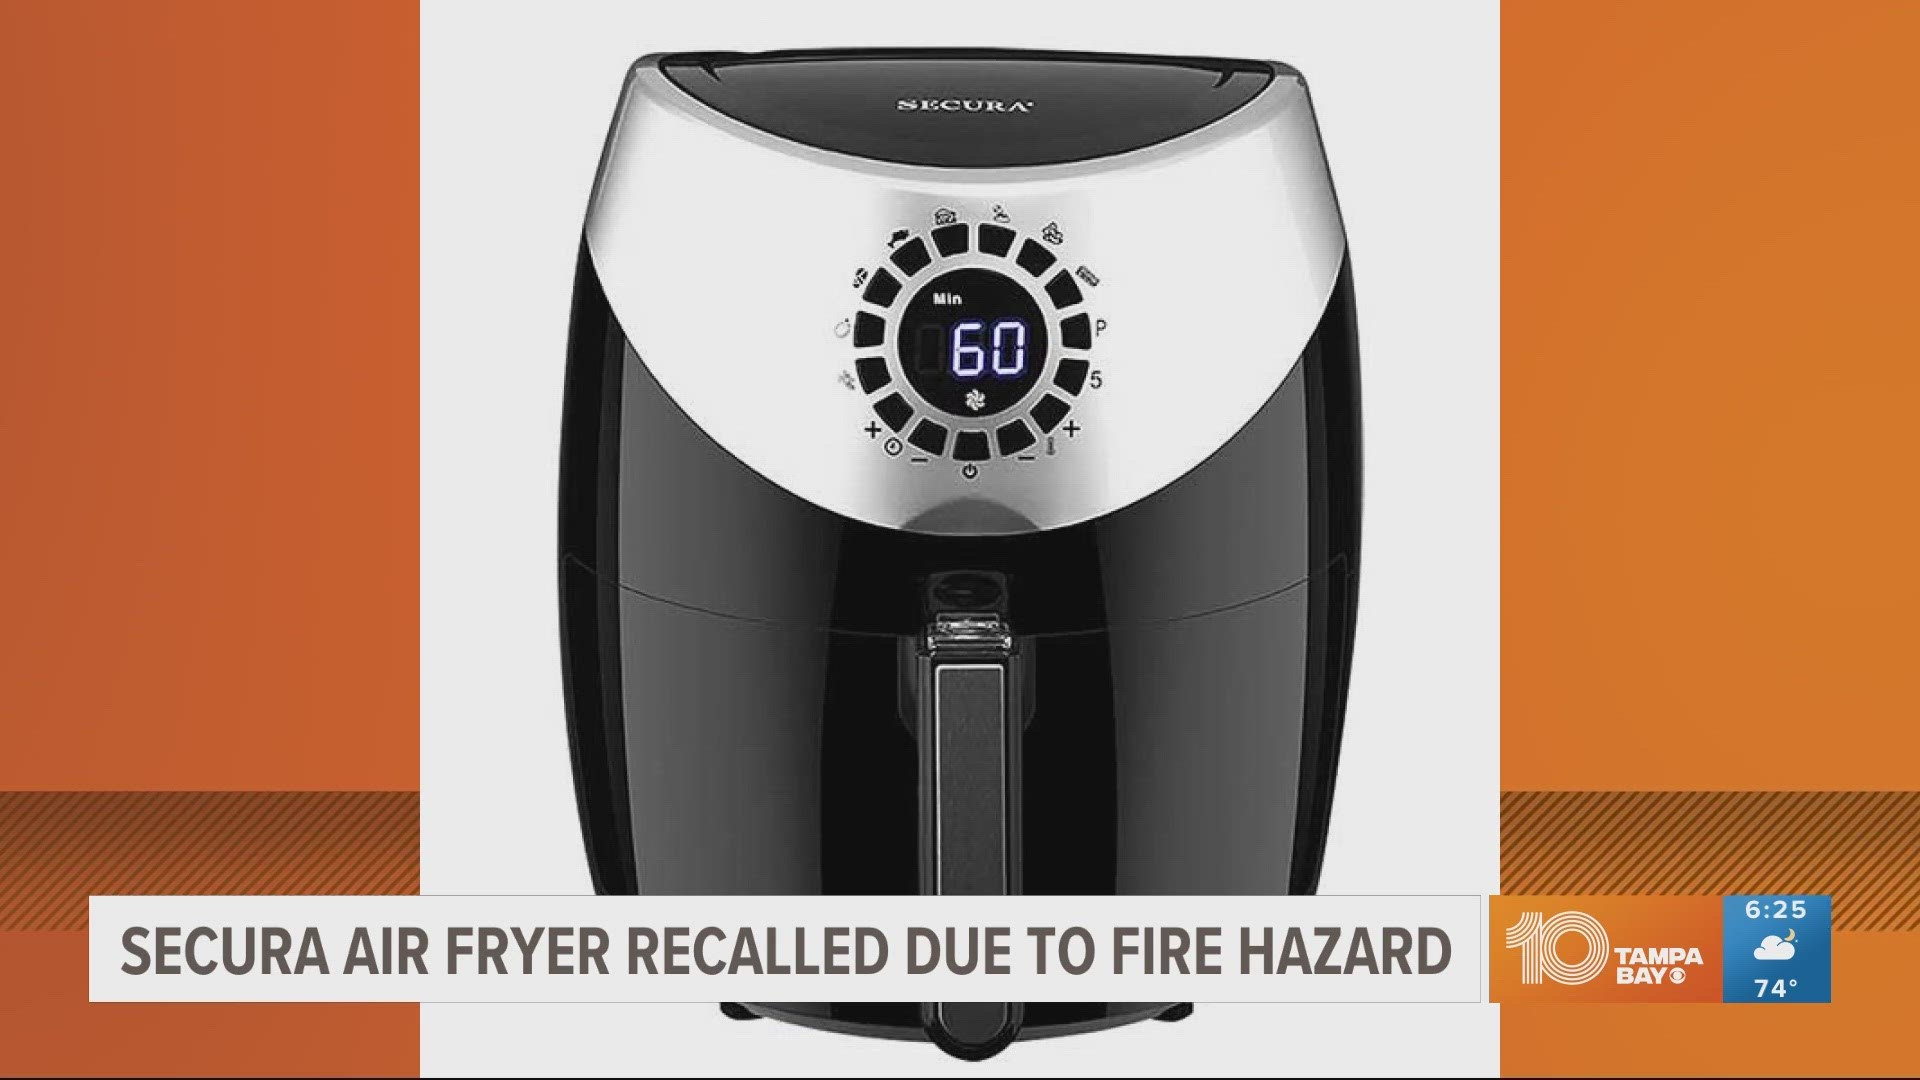 Fire, burn hazard triggers Secura air fryer recall - Top Class Actions